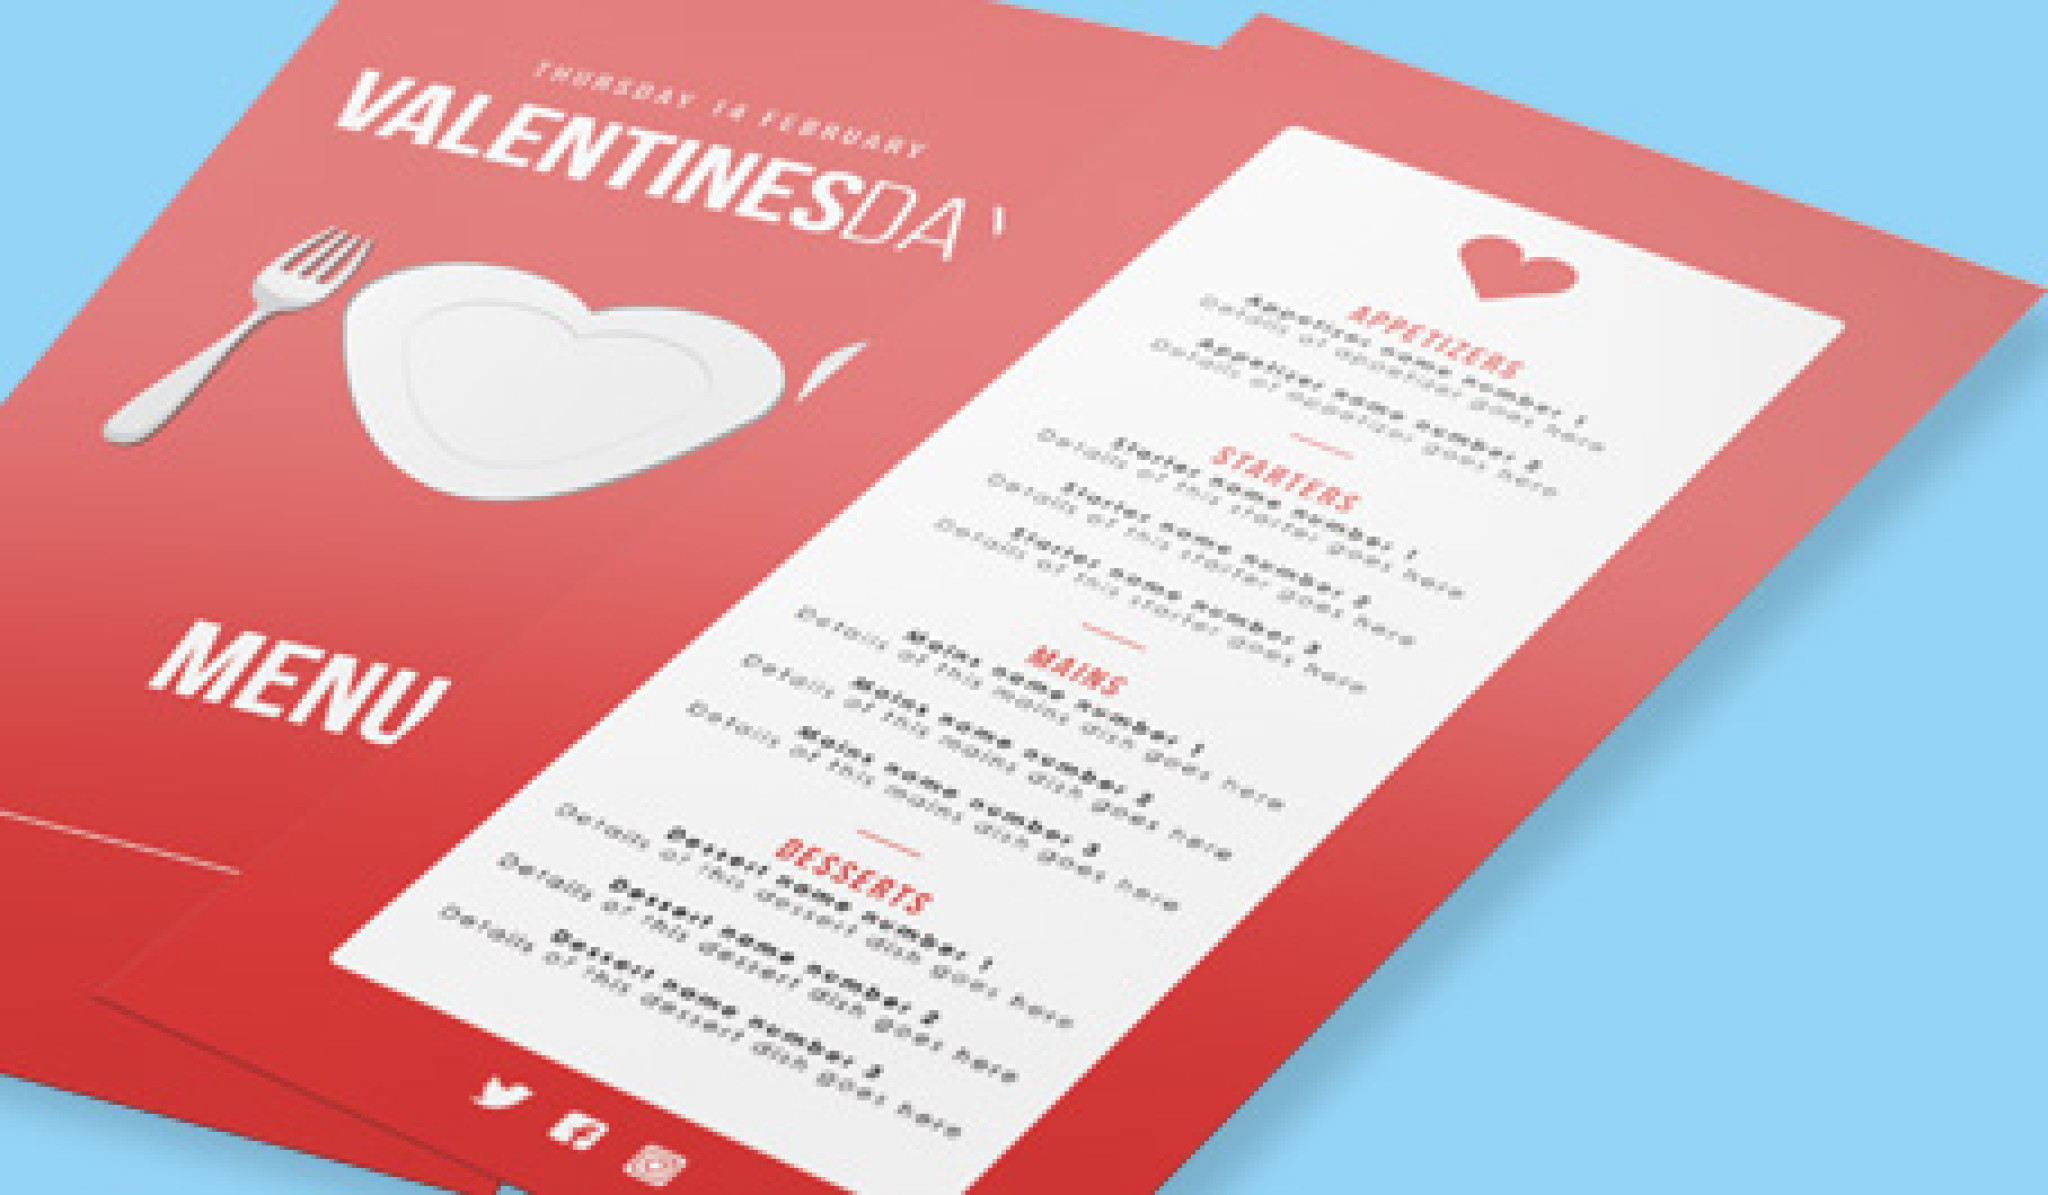 Valentines-day-template-design-downloads.jpg